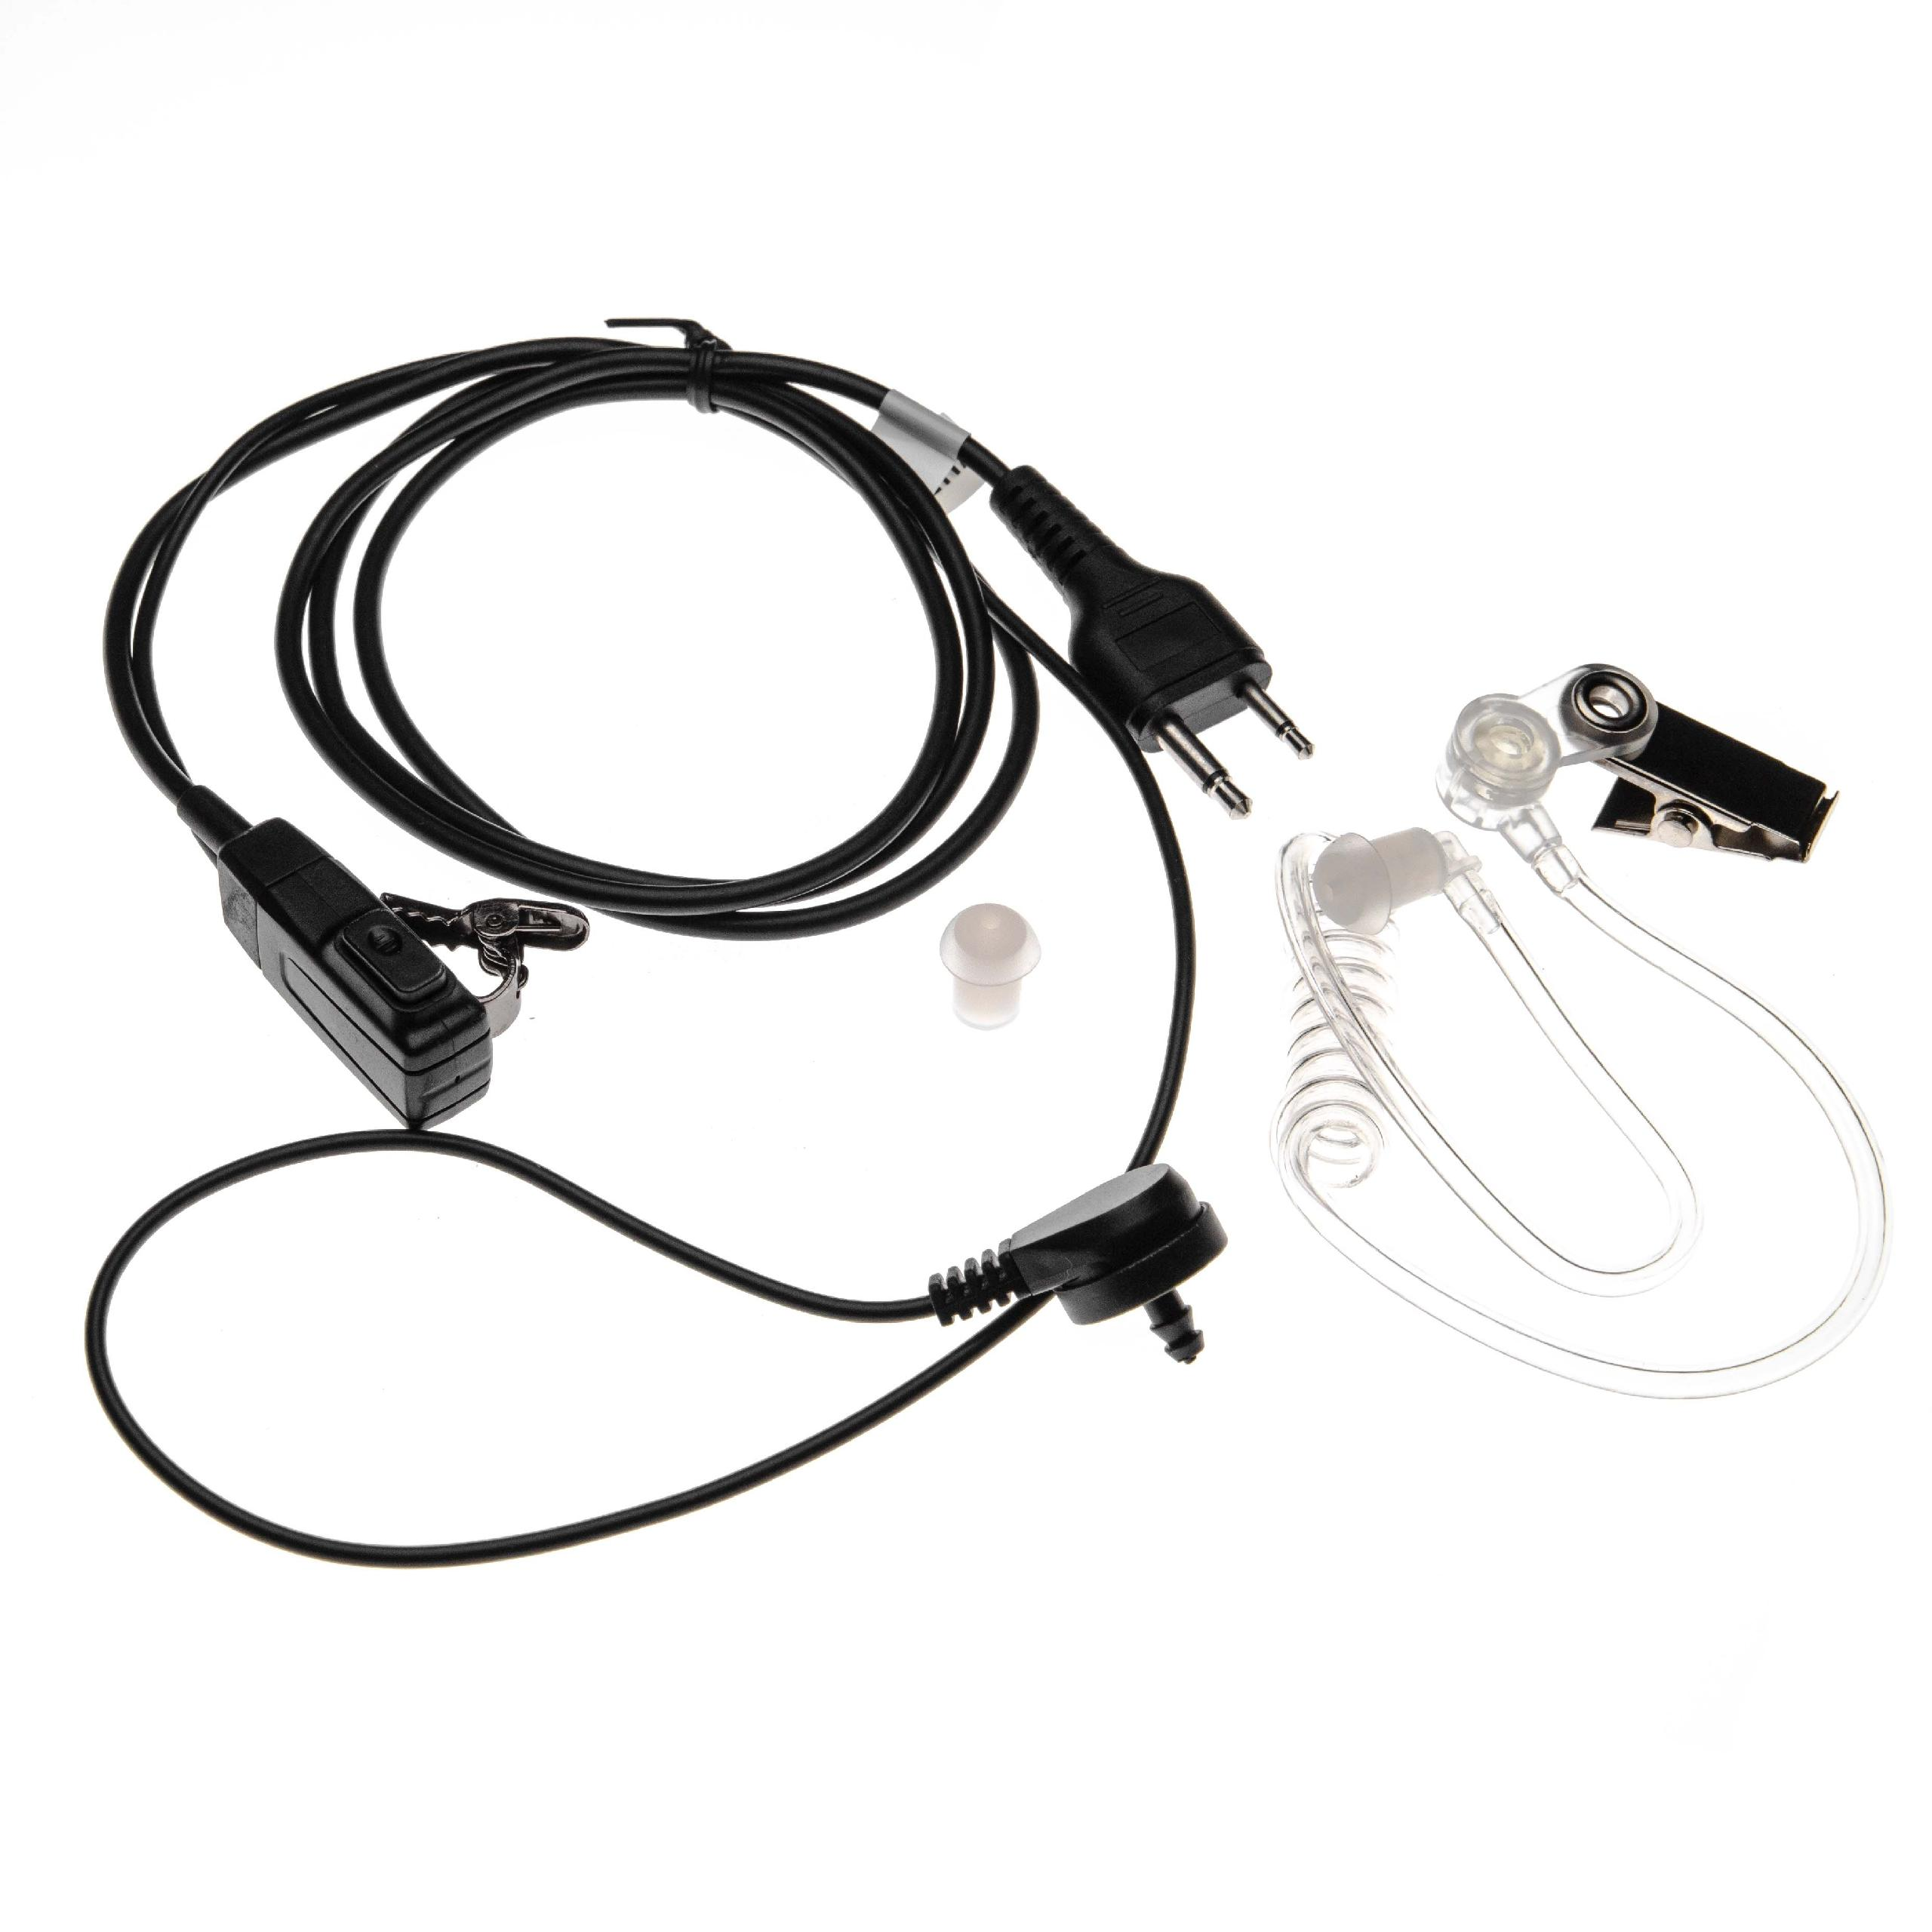 VHBW kompatibel mit IC-T22A, Headset On-ear IC-T22, IC-T2E, IC-T22E, IC-T2A, Icom IC-T21E, IC-T21A, / transparent IC-T21CP, schwarz IC-T2